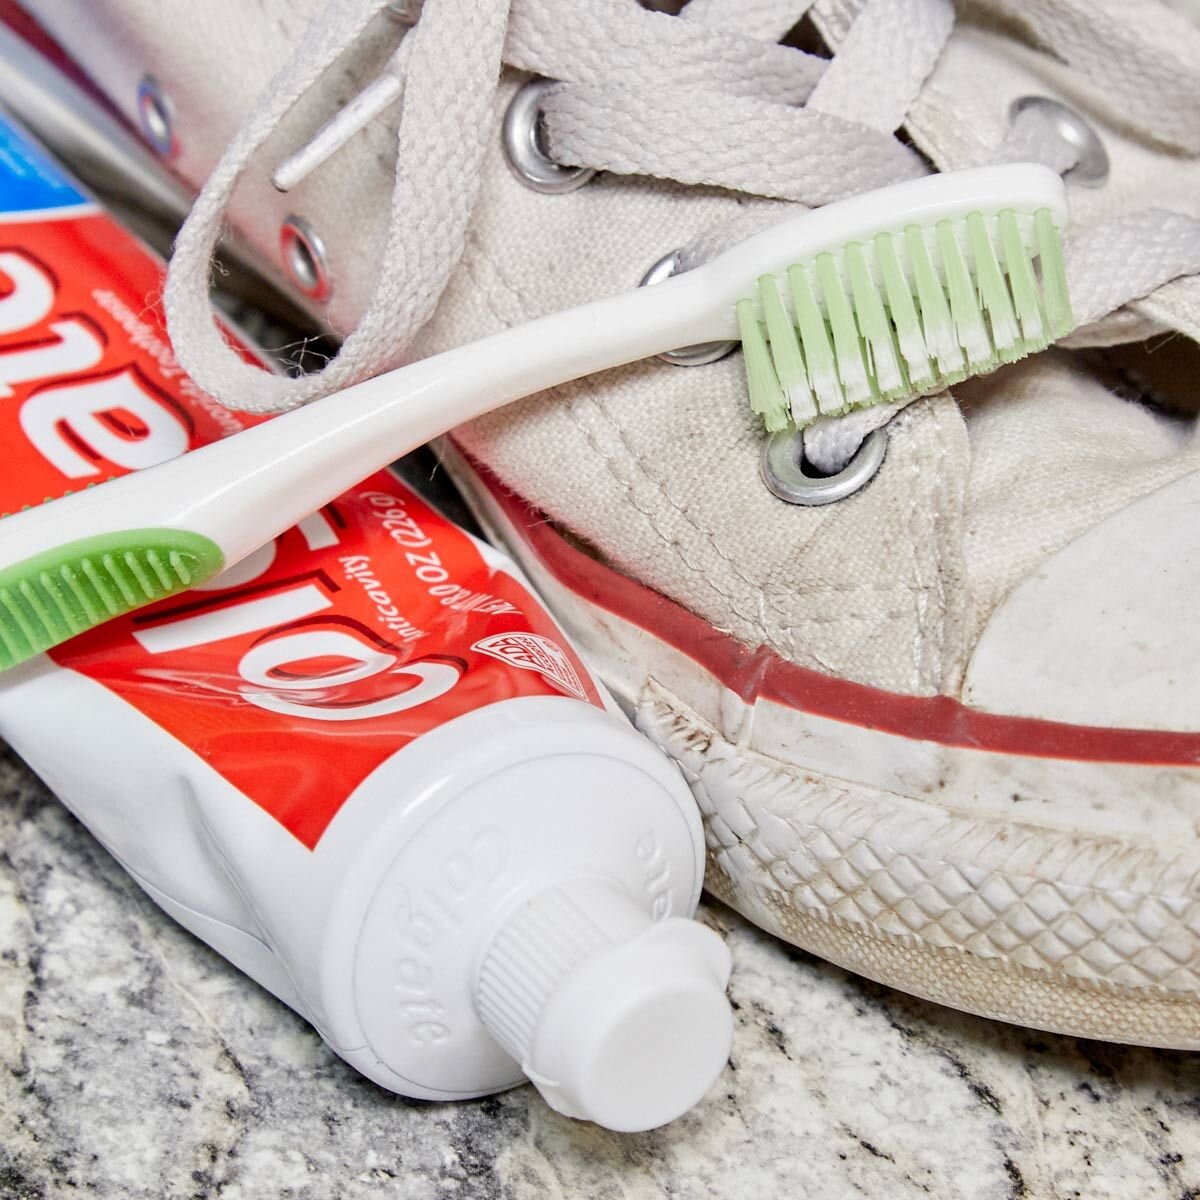 Чем можно почистить подошву. Зубная паста для кроссовок. Чистка кроссовок зубной пастой. Зубная паста для белой обуви. Паста для очистки подошвы кроссовок.